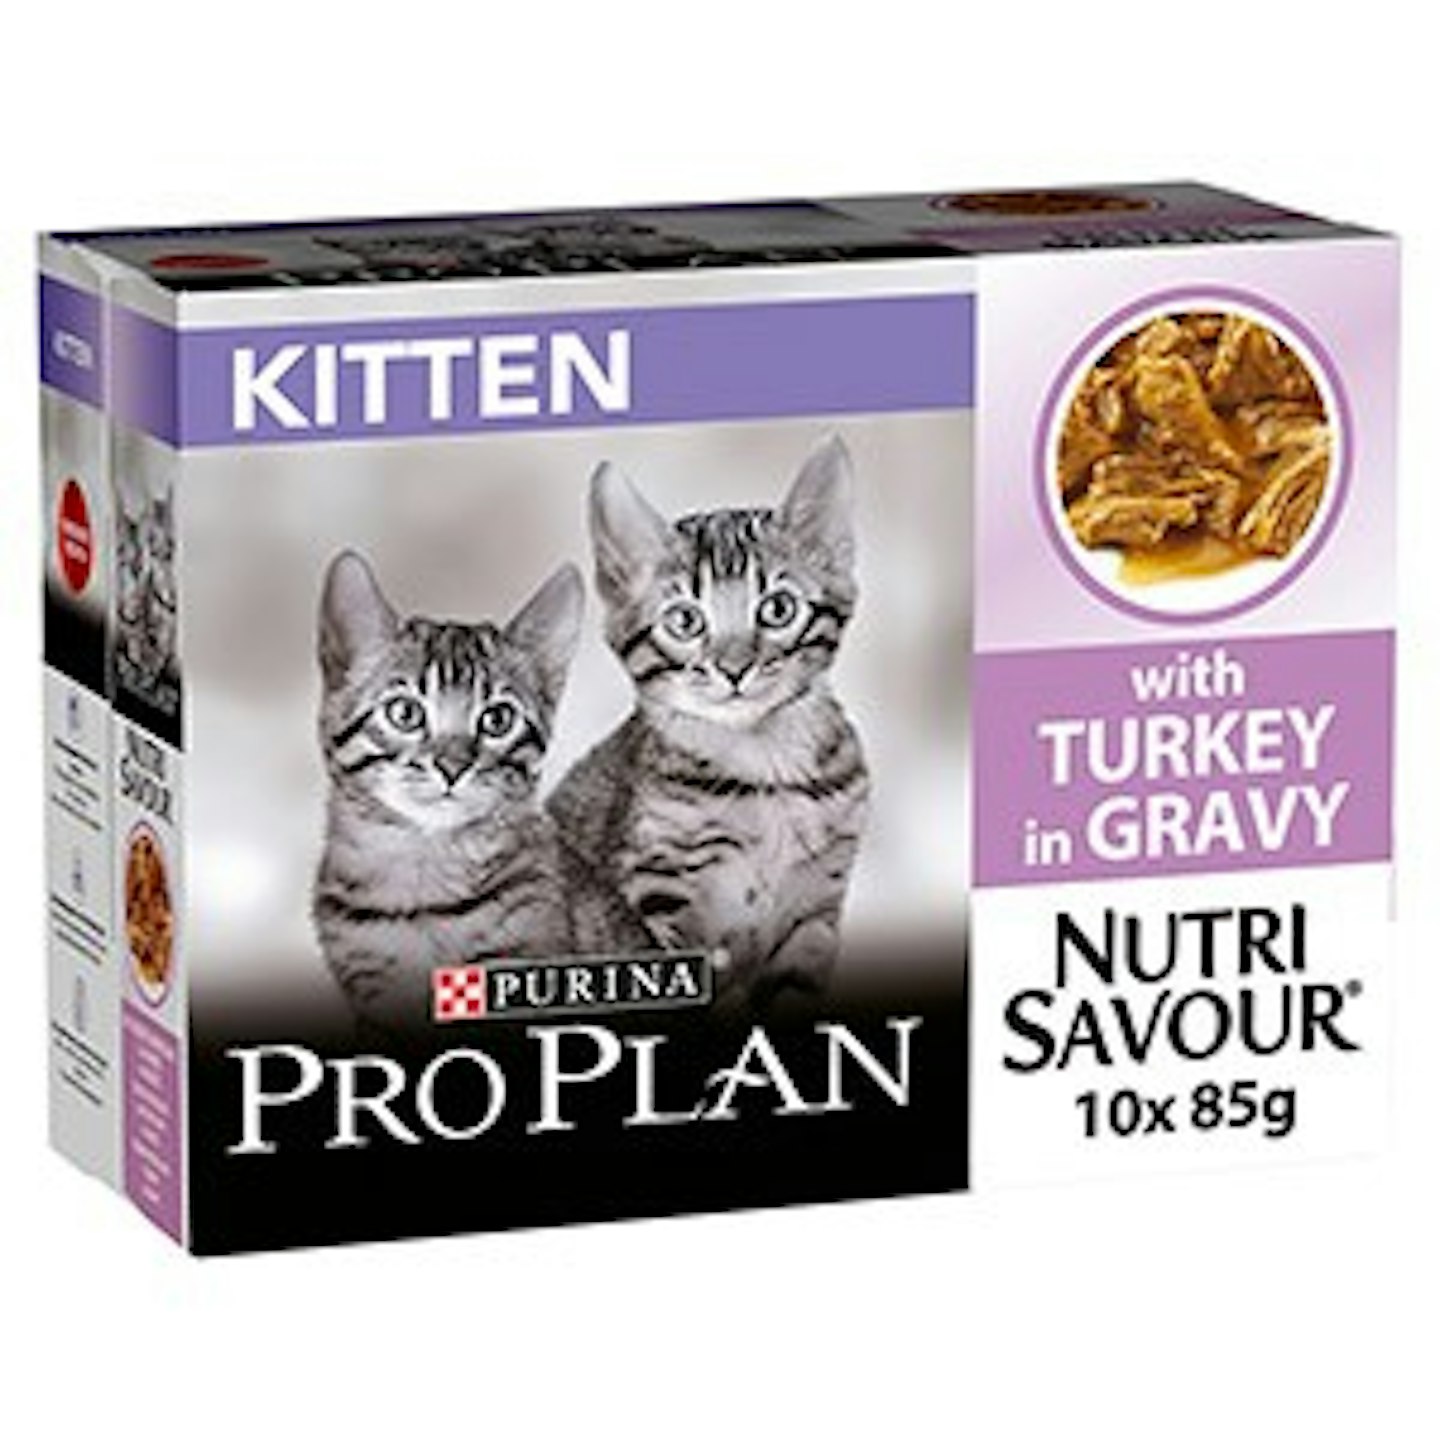 Pro Plan Nutrisavour Wet Kitten Food Turkey 10x85g Pouches